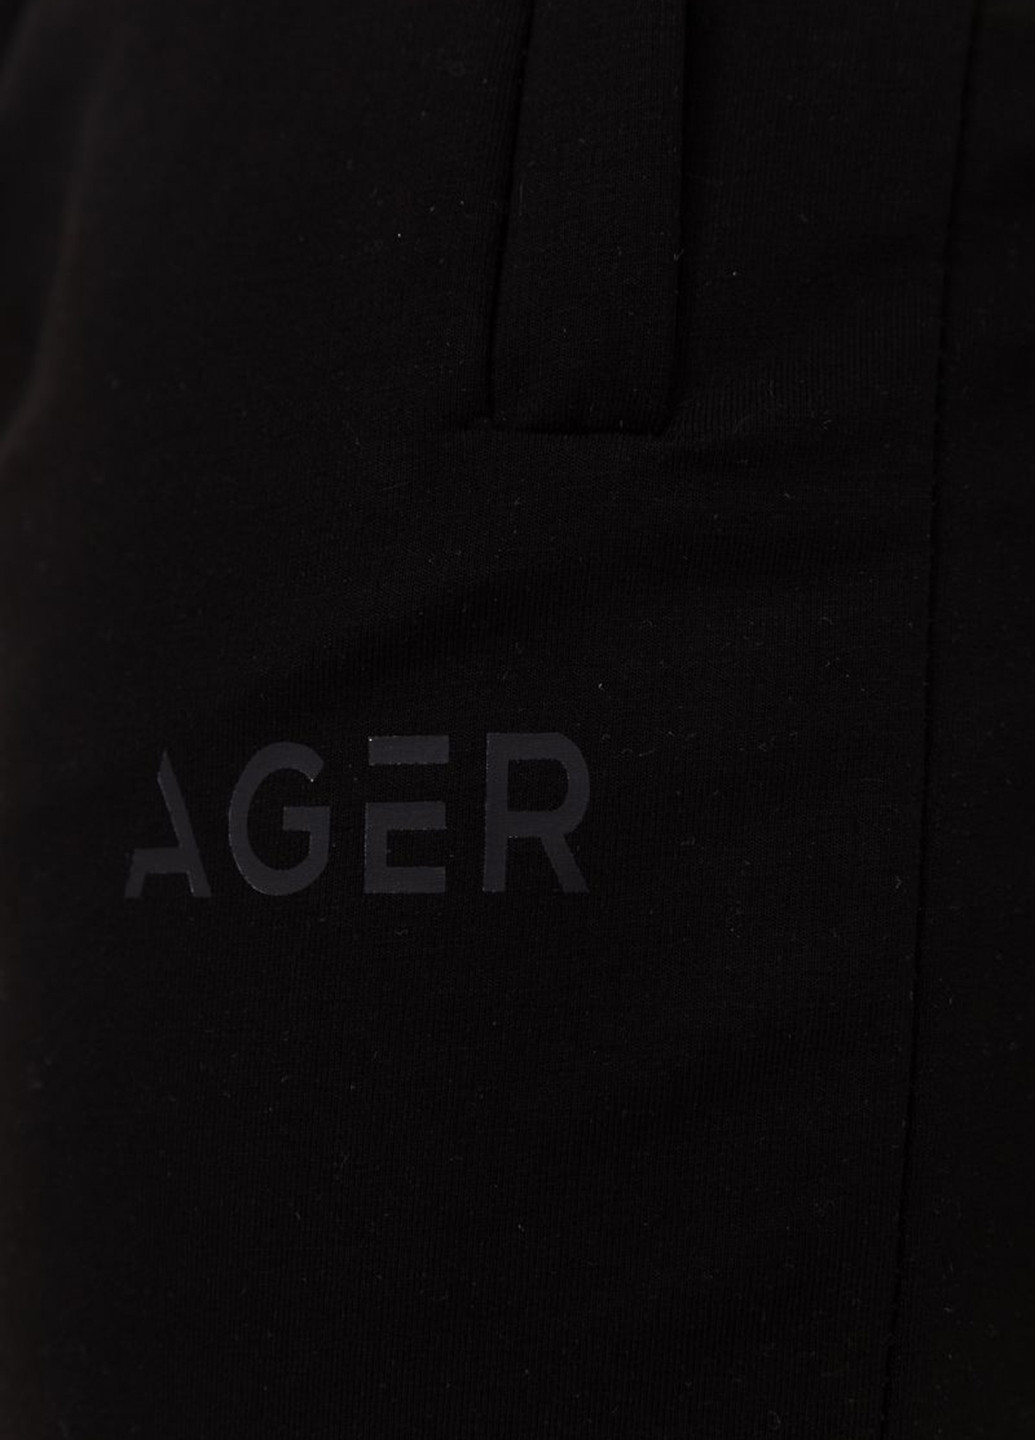 Черные спортивные демисезонные джоггеры брюки Ager